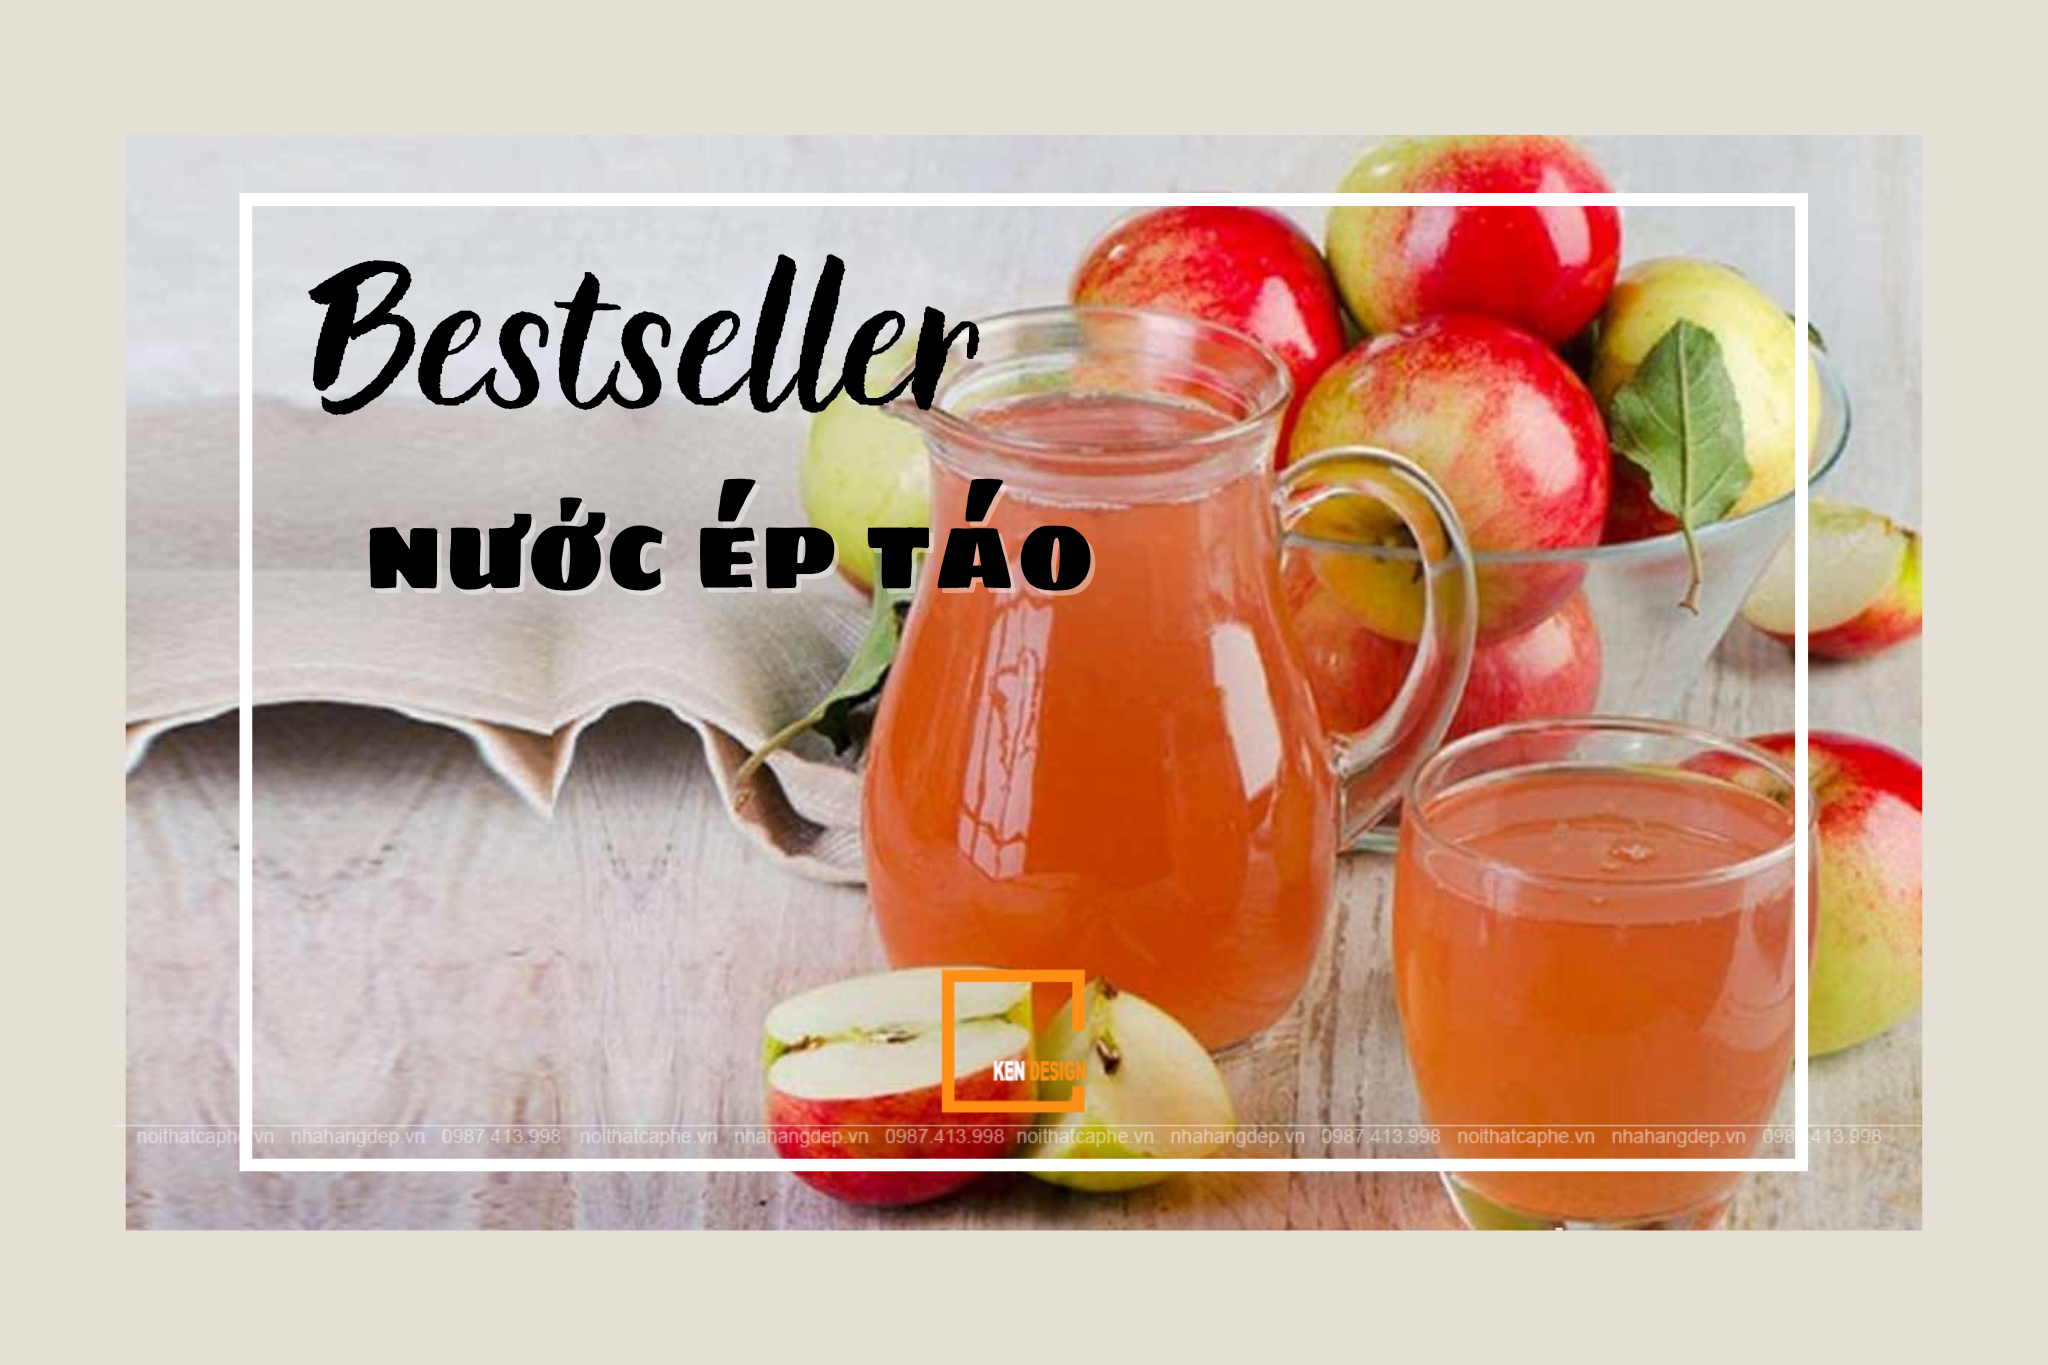 Nước ép táo - Bestseller của các quán đồ uống